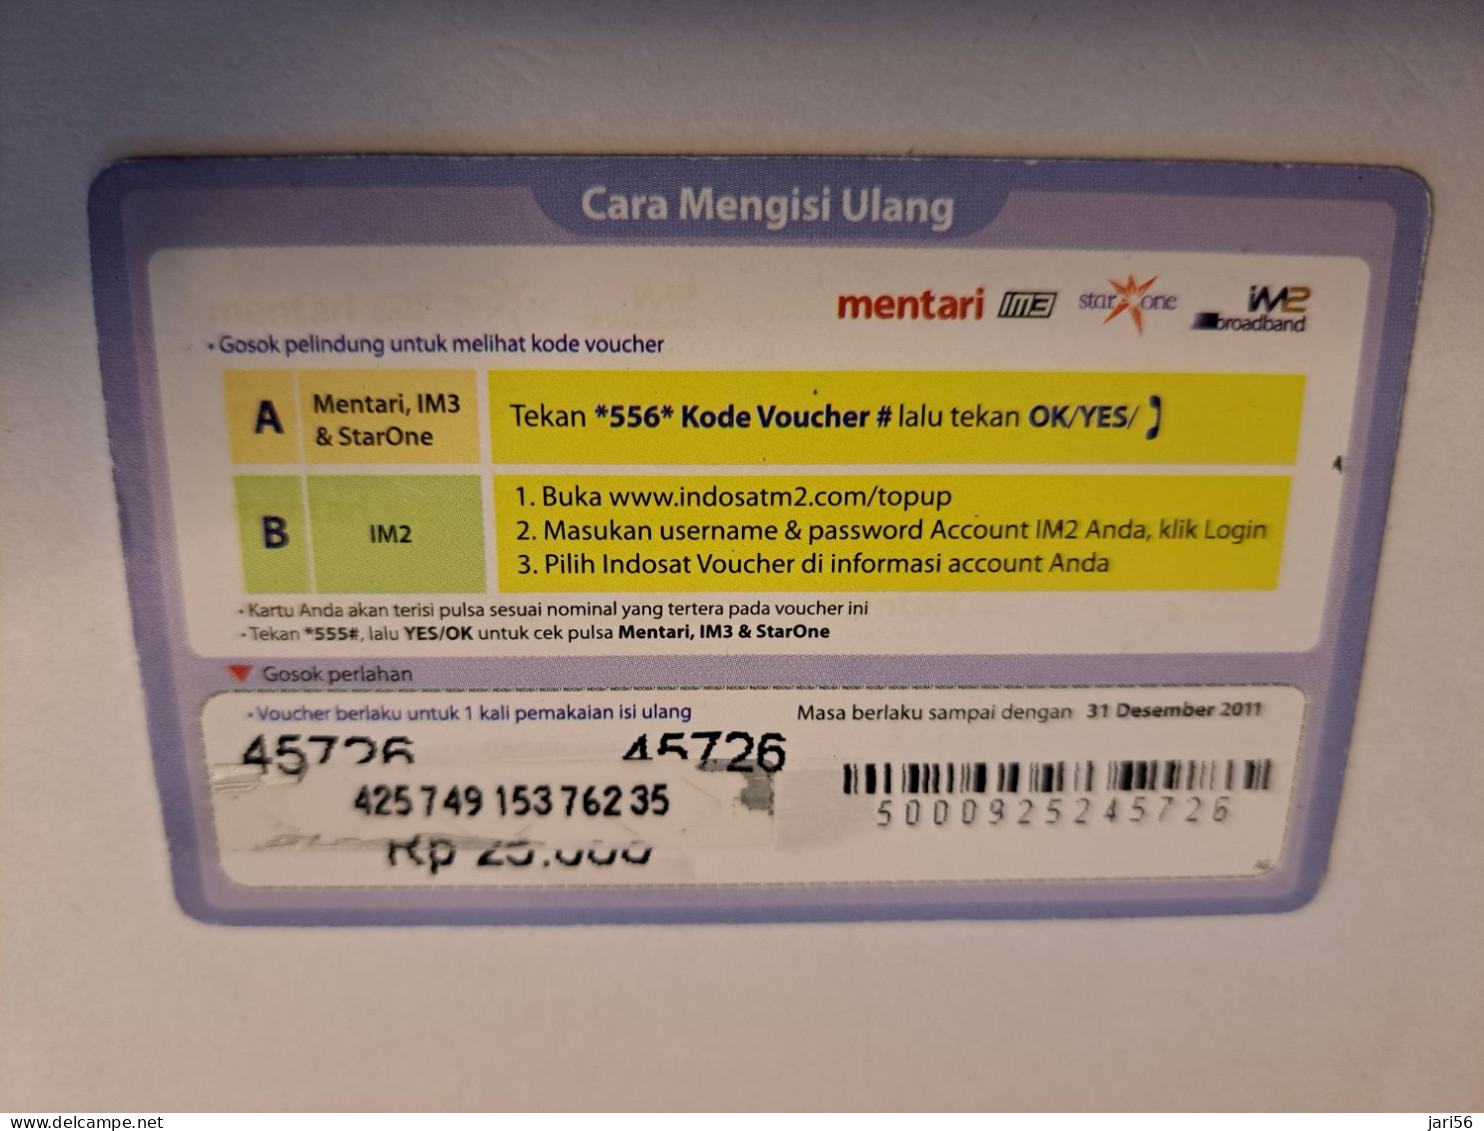 INDONESIA / PREPAID/   RP 25.000 /PW HARRY MOELYANTO            Fine Used Card  **16088** - Indonesien